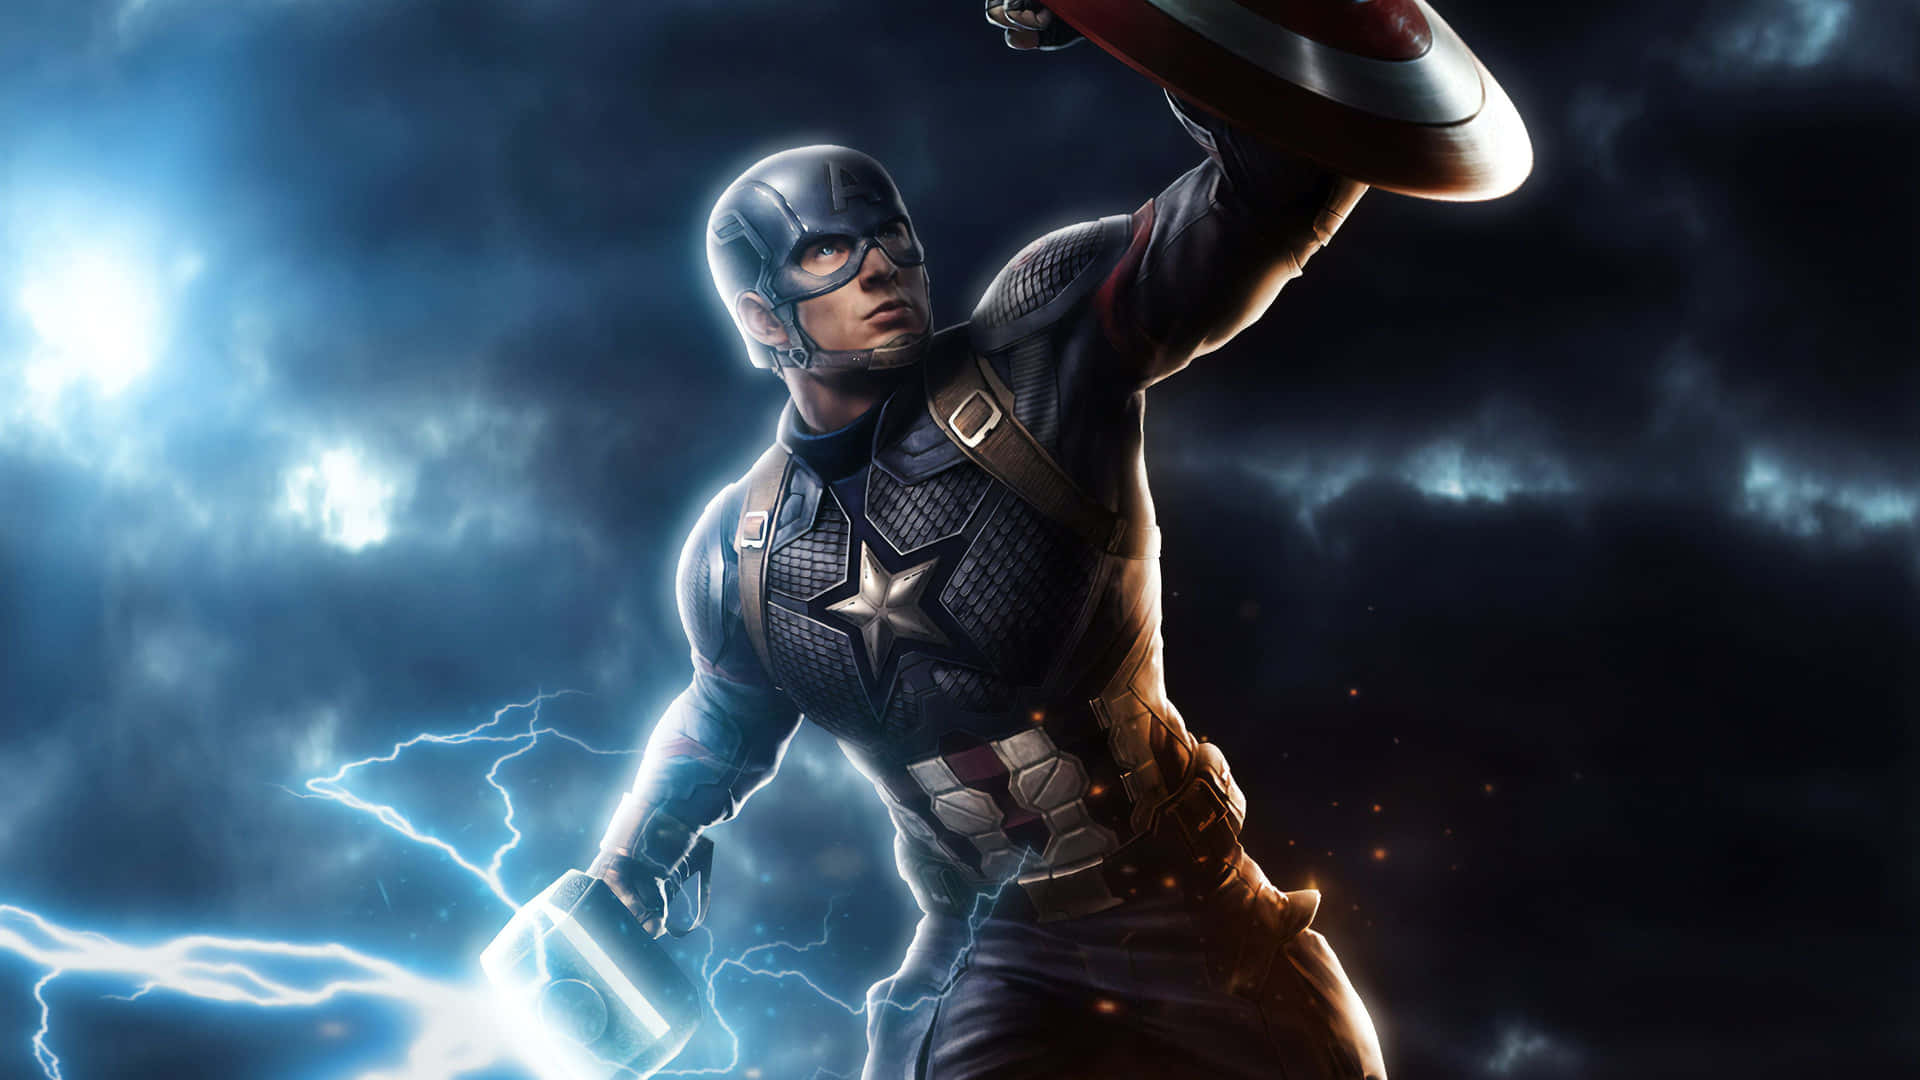 Captain America Shield Defense